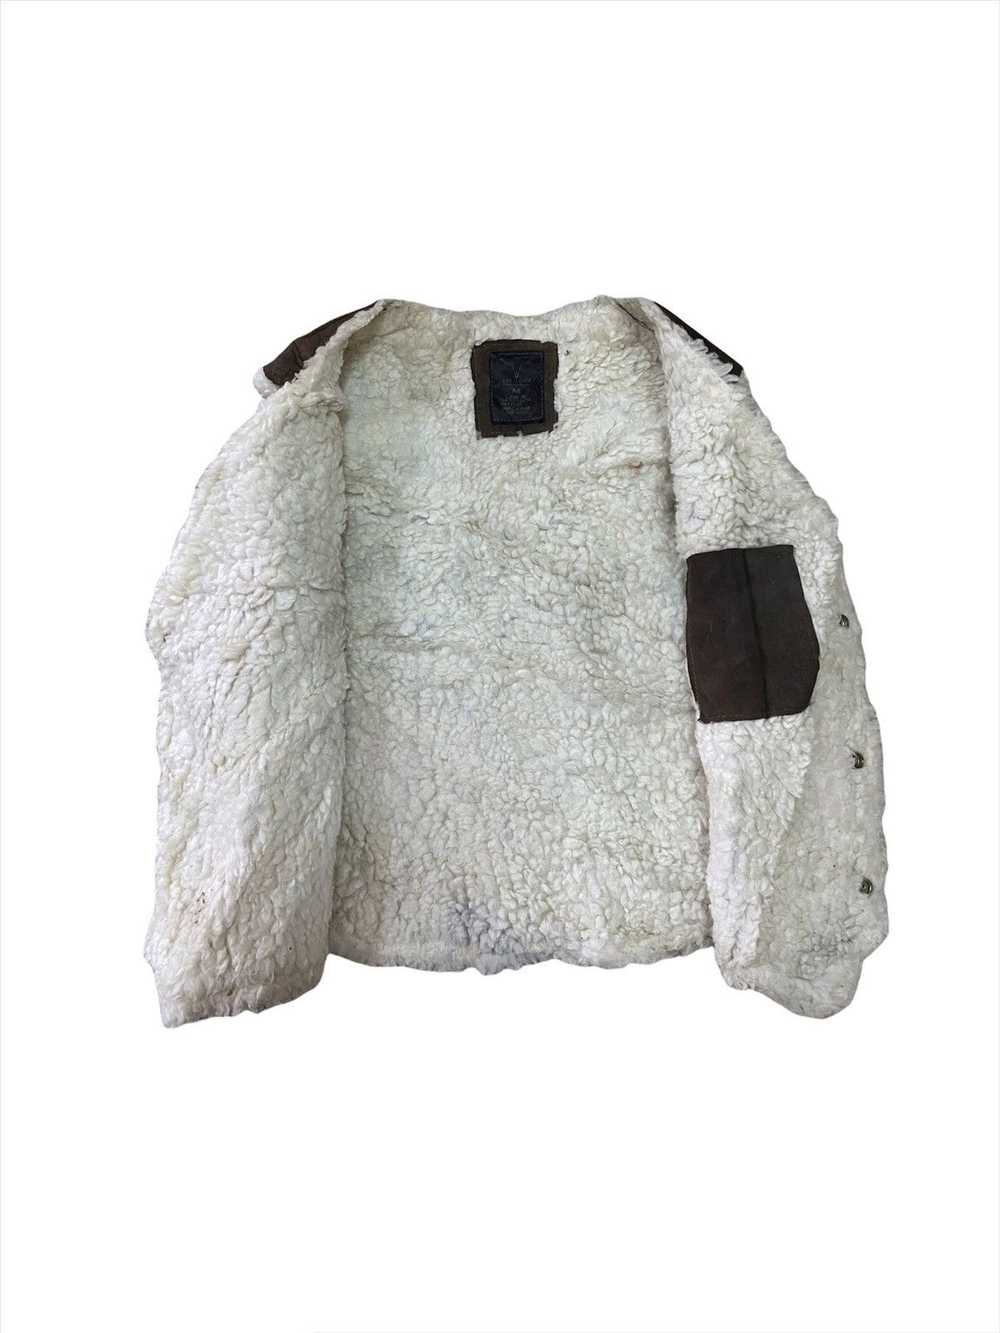 Leather × Mink Fur Coat × Tracey Vest Faur Fur Pa… - image 4